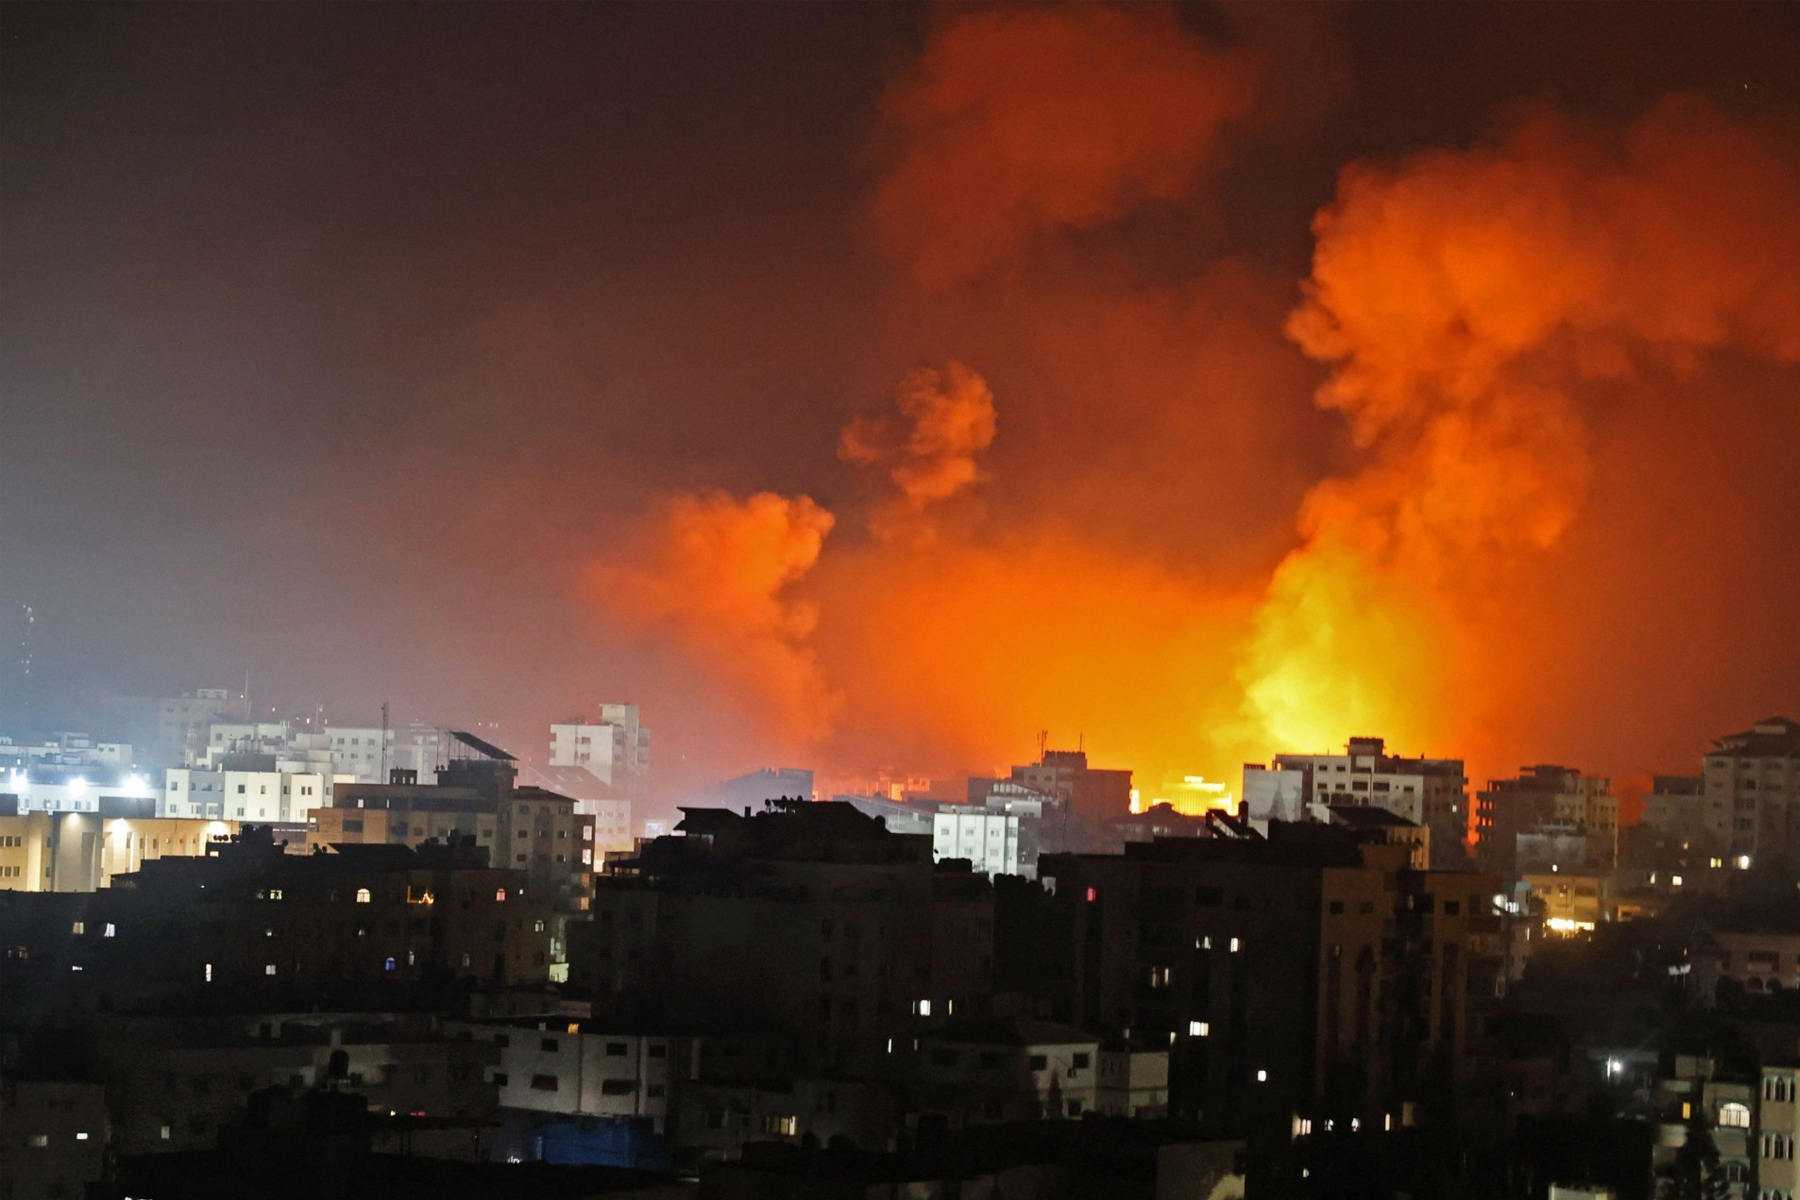 سازمان همکاری اسلامی در واکنش به اتفاقات نوار غزه نشست اضطراری تشکیل داد